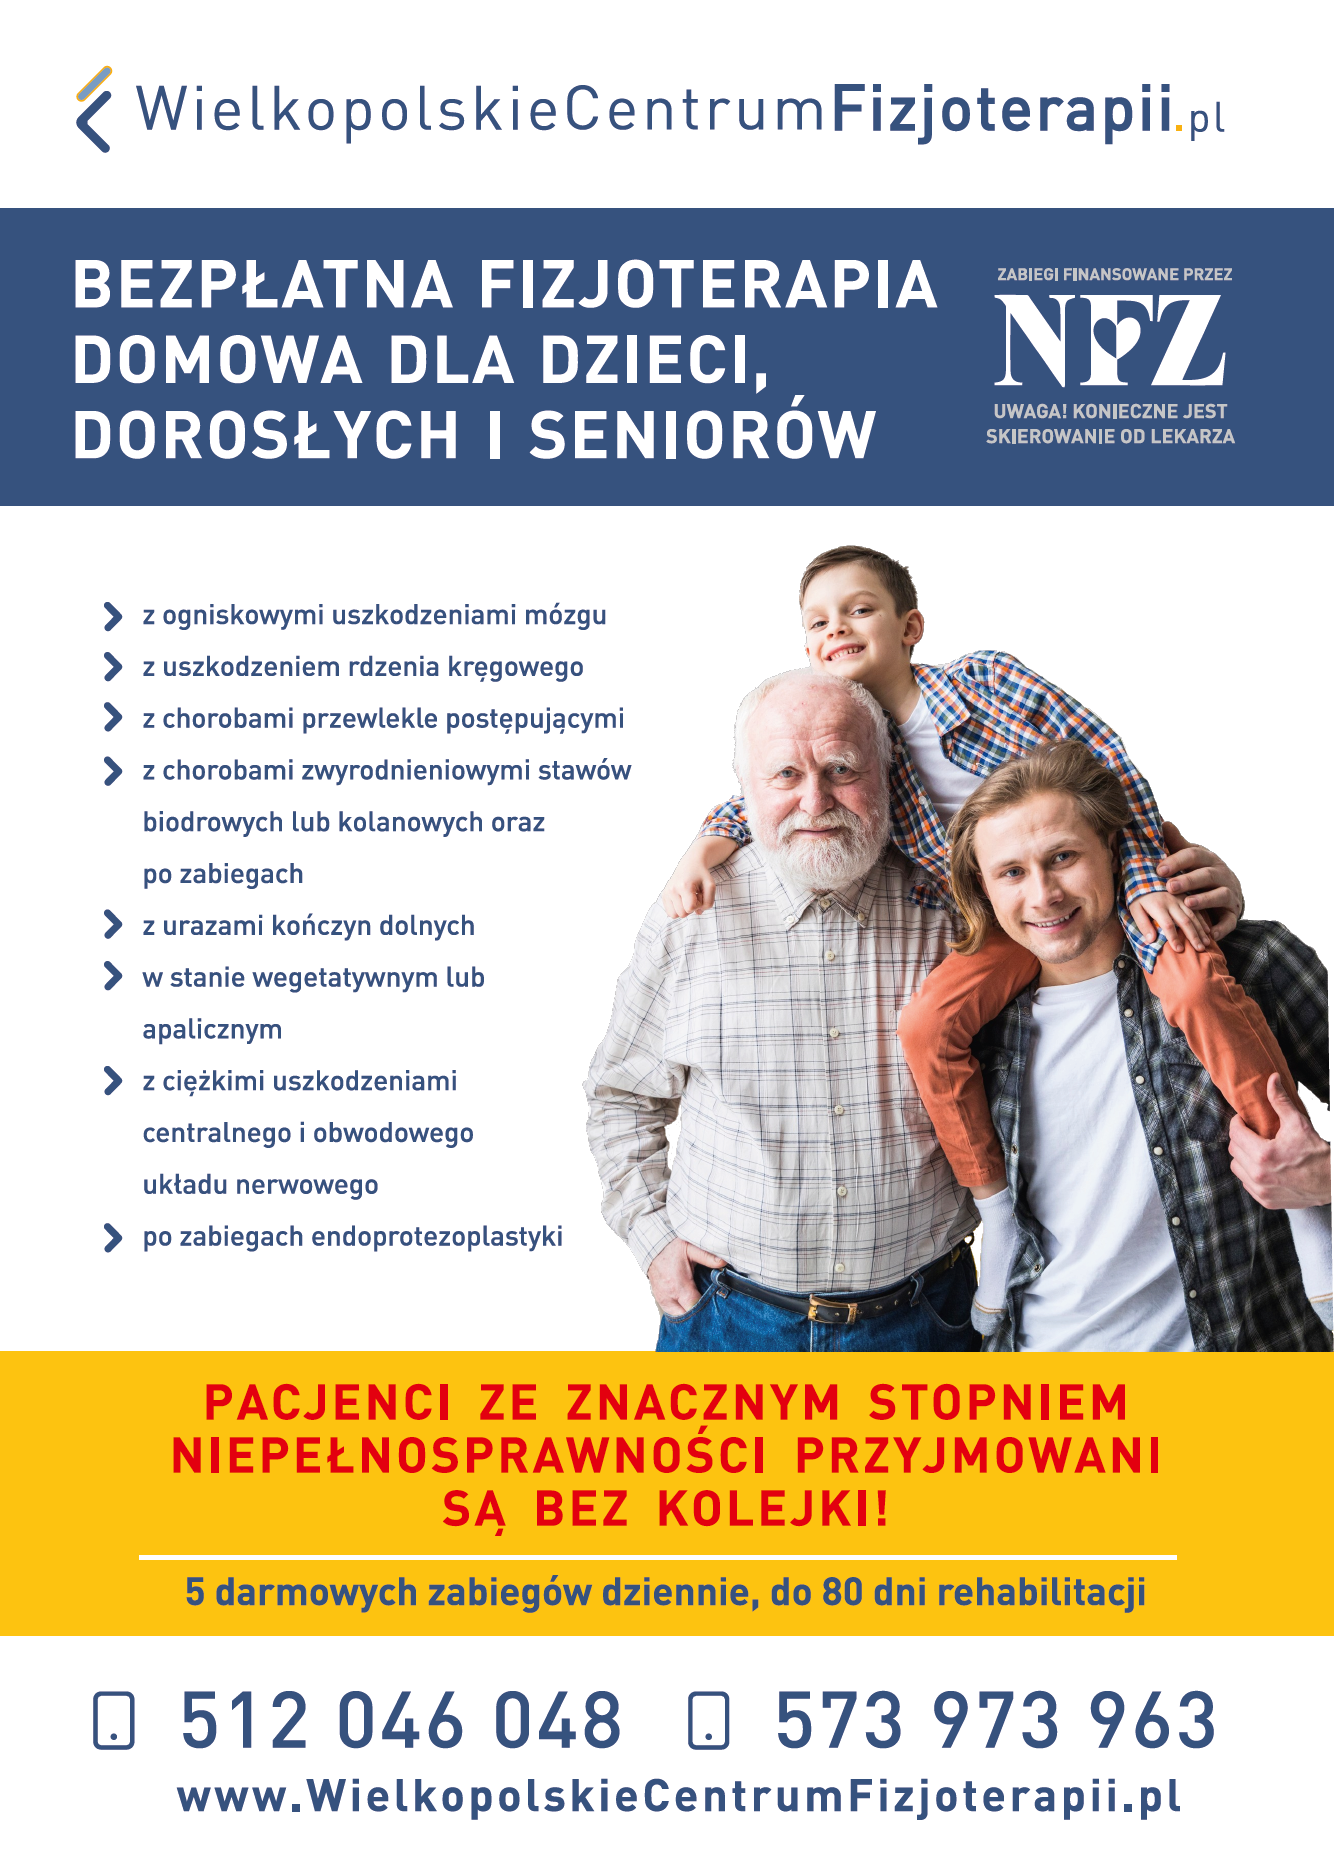 Plakat informujący o bezpłatnej domowej fizjoterapii dla dzieci, dorosłych i seniorów&nbsp;